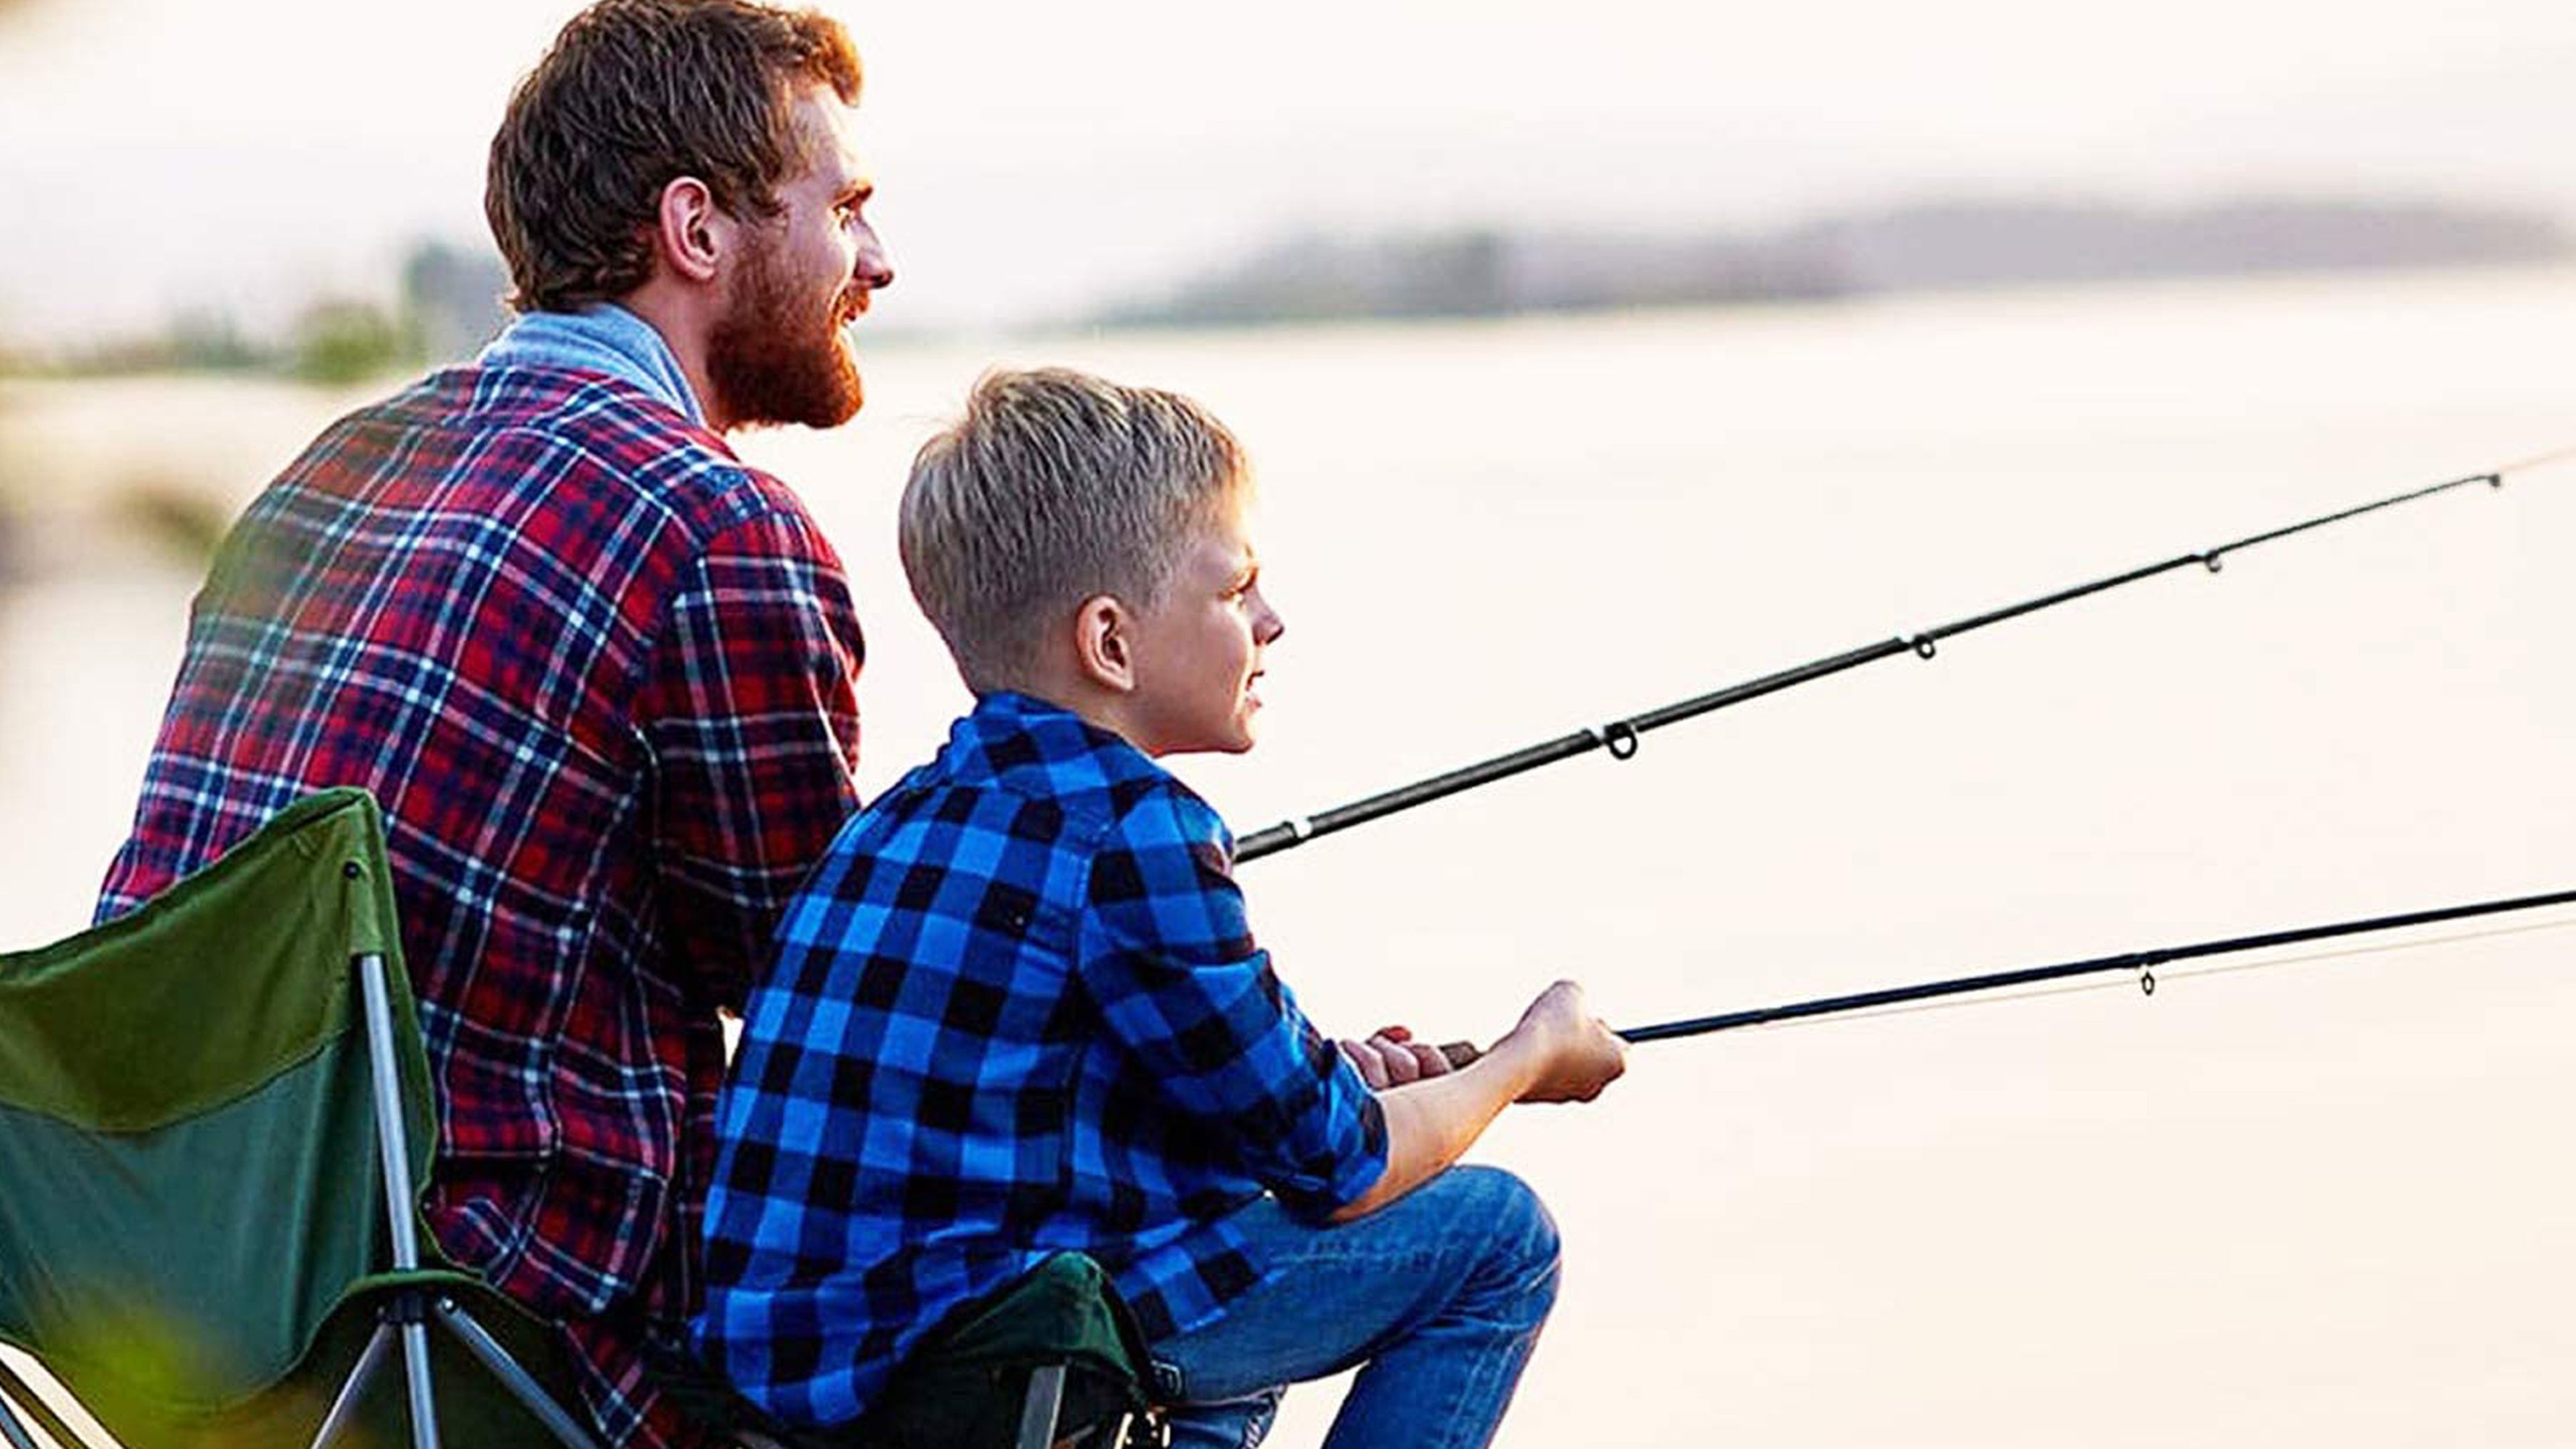 Pesca para principiantes: guía y equipo básico según la modalidad